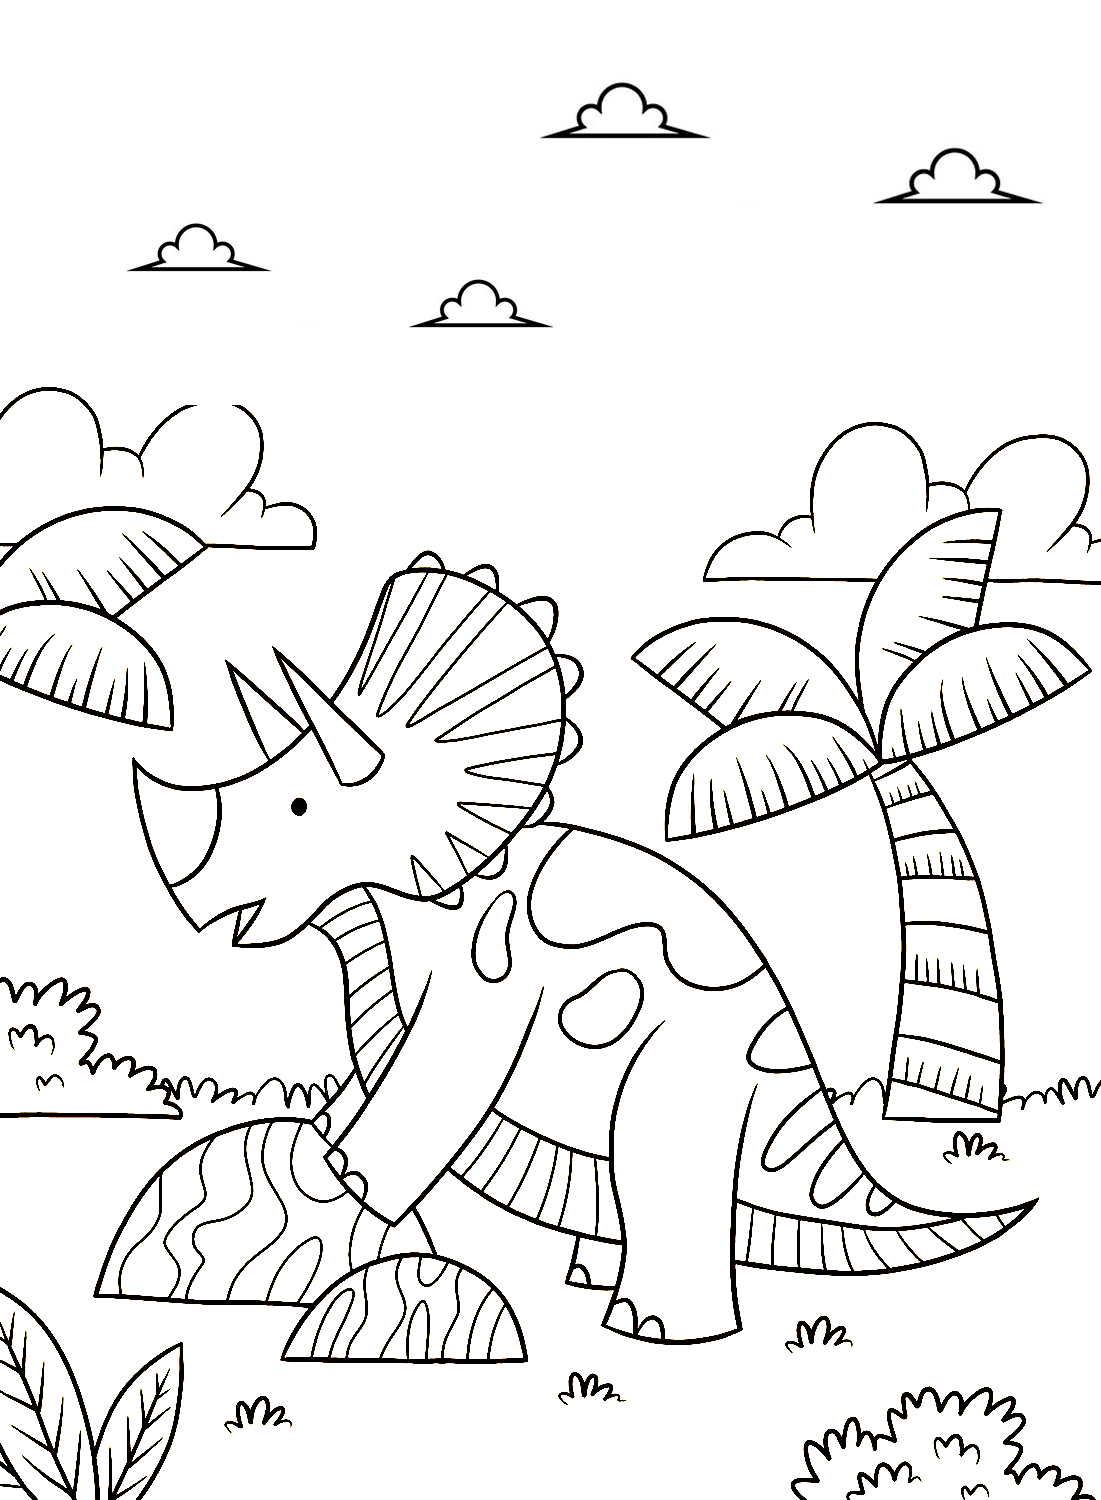 Disegni da colorare stampabili di triceratopo